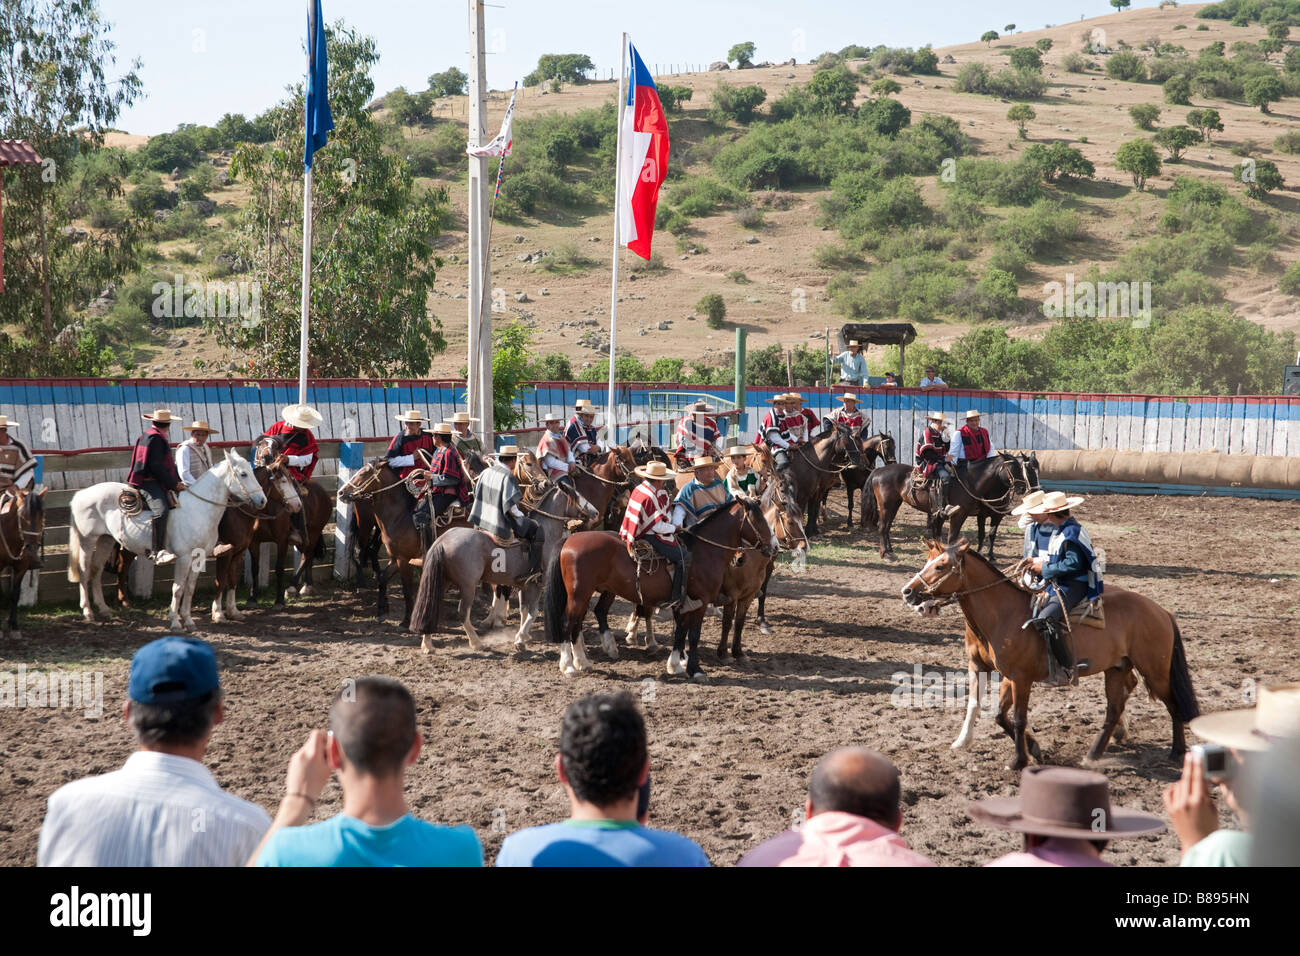 Chilean Rodeo in Los Cerrillos, Chile Stock Photo